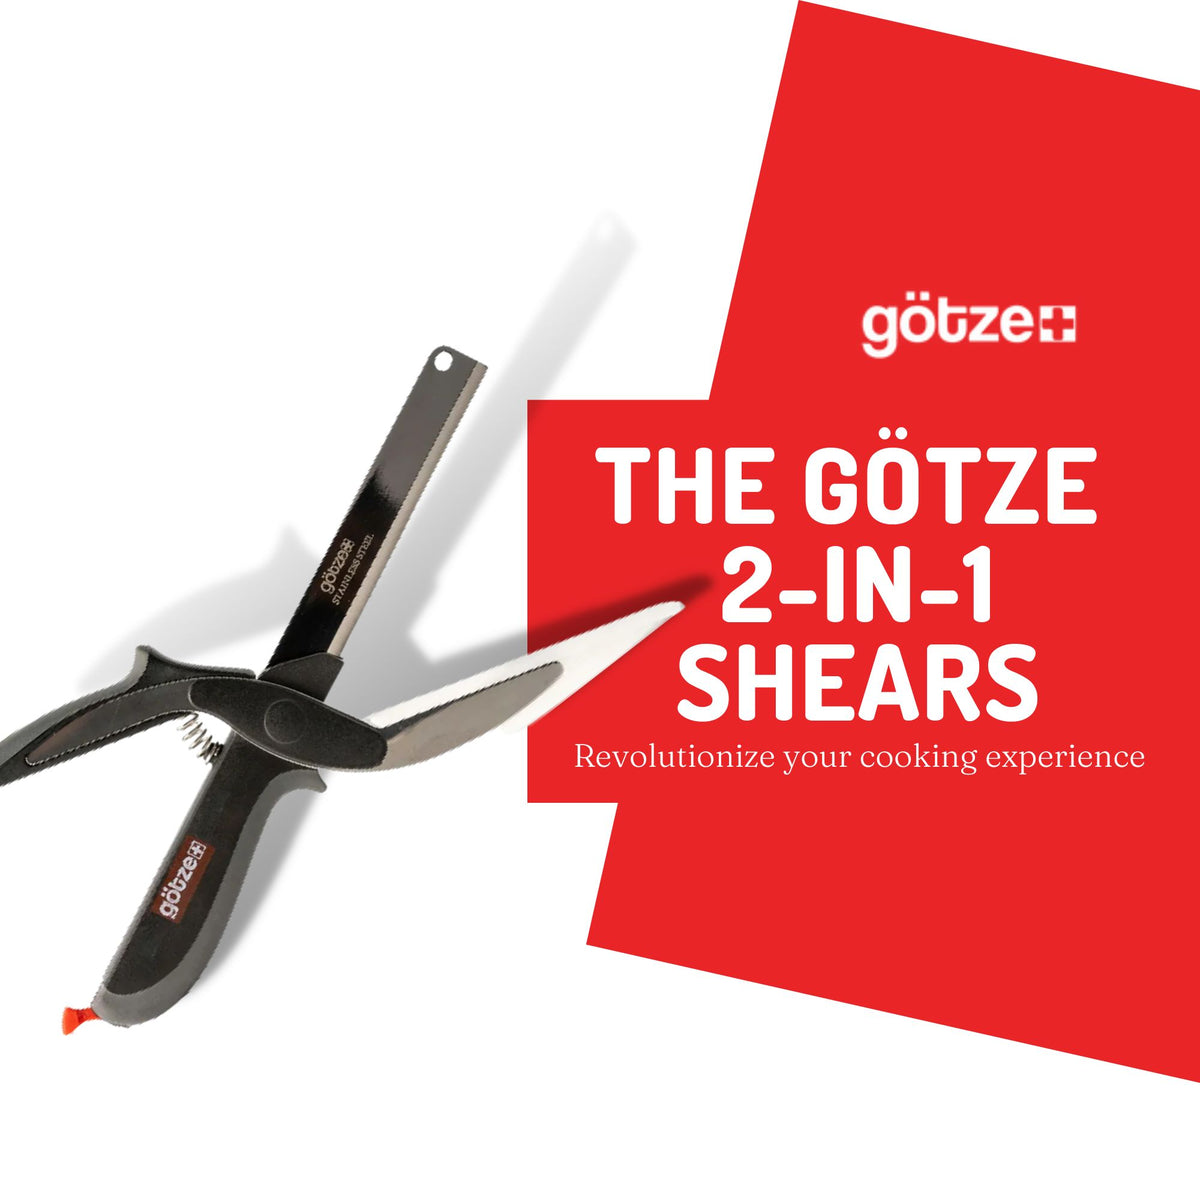 The Gotze 2-in-1 Shears